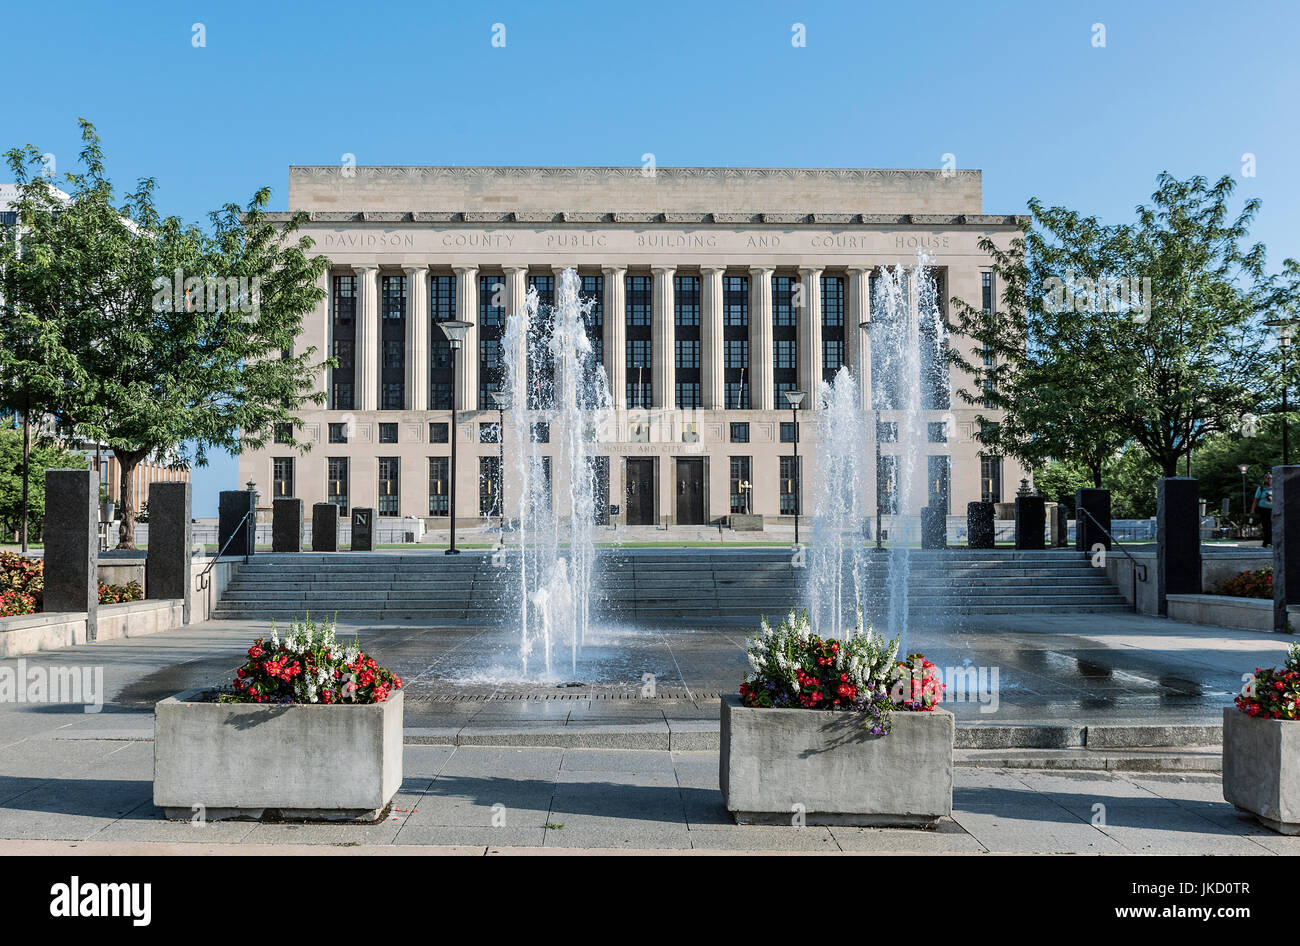 Davidson County City Hall e Casa Corte, Nashville, Tennessee, Stati Uniti d'America. Foto Stock